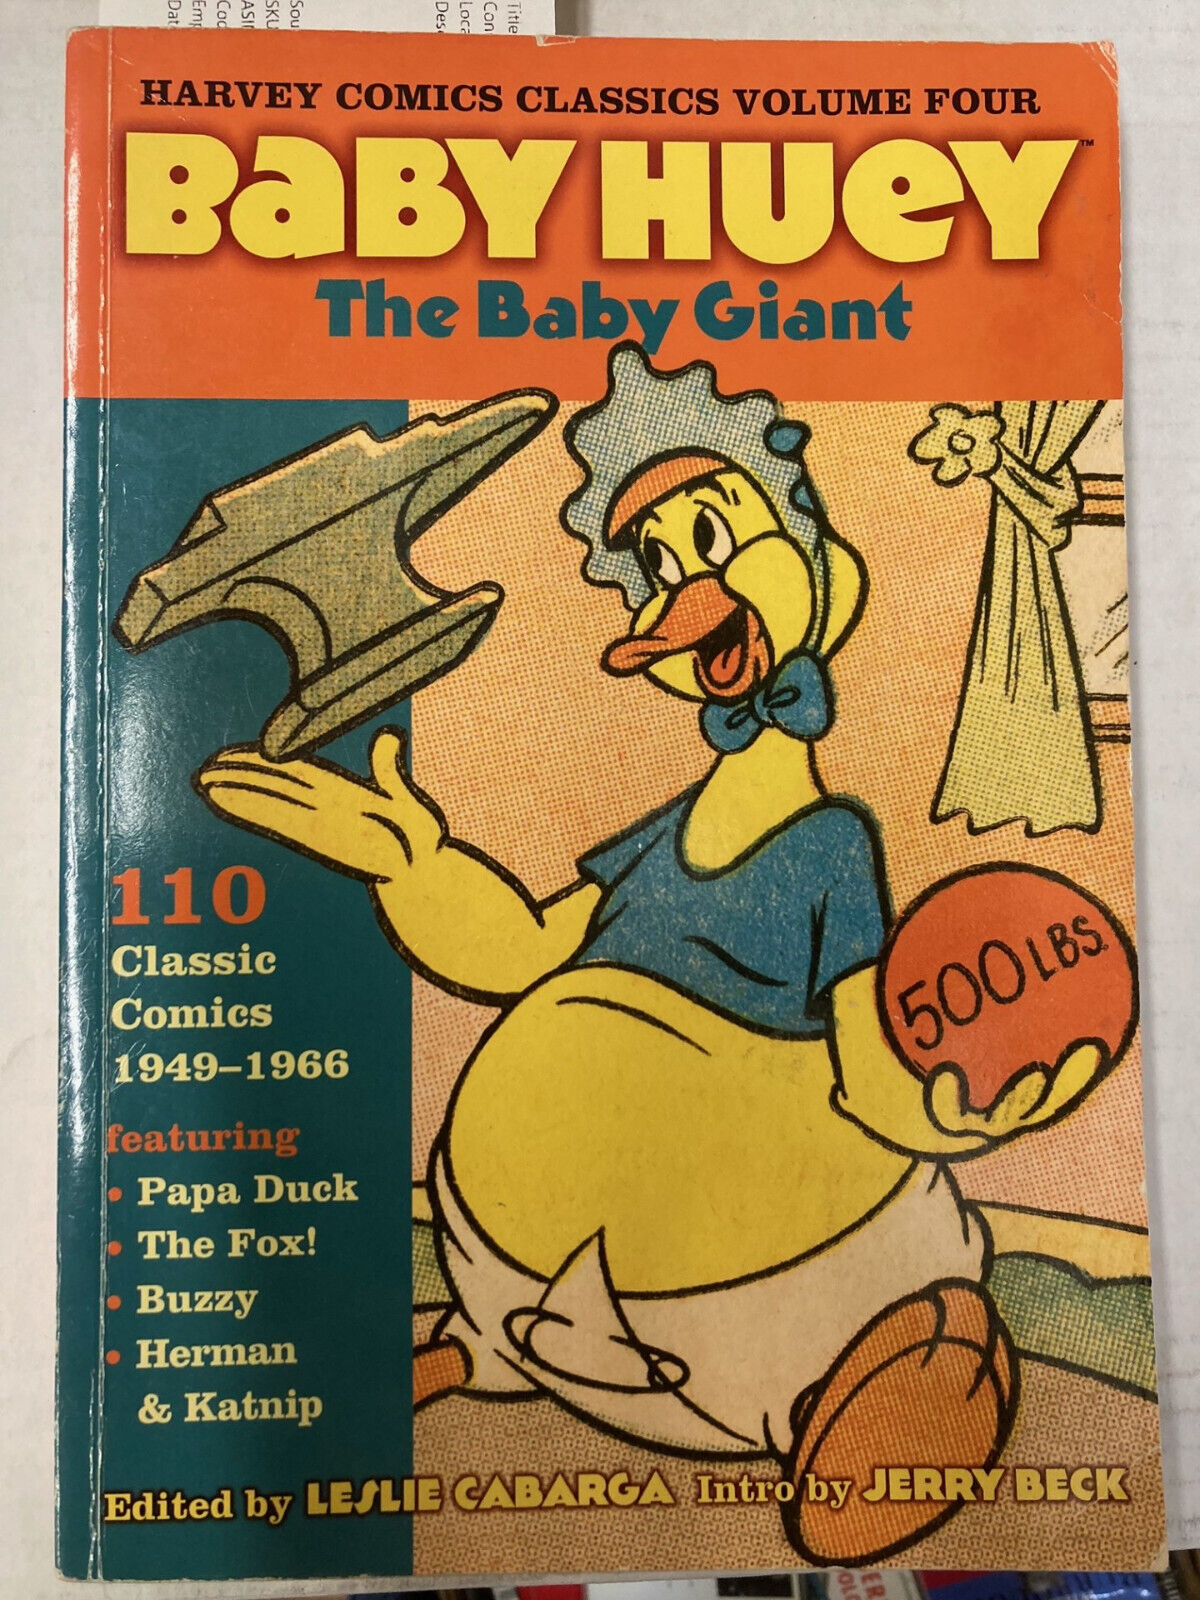 Harvey Comics Classics Volume 4: Baby Huey [Harvey Classics Library]